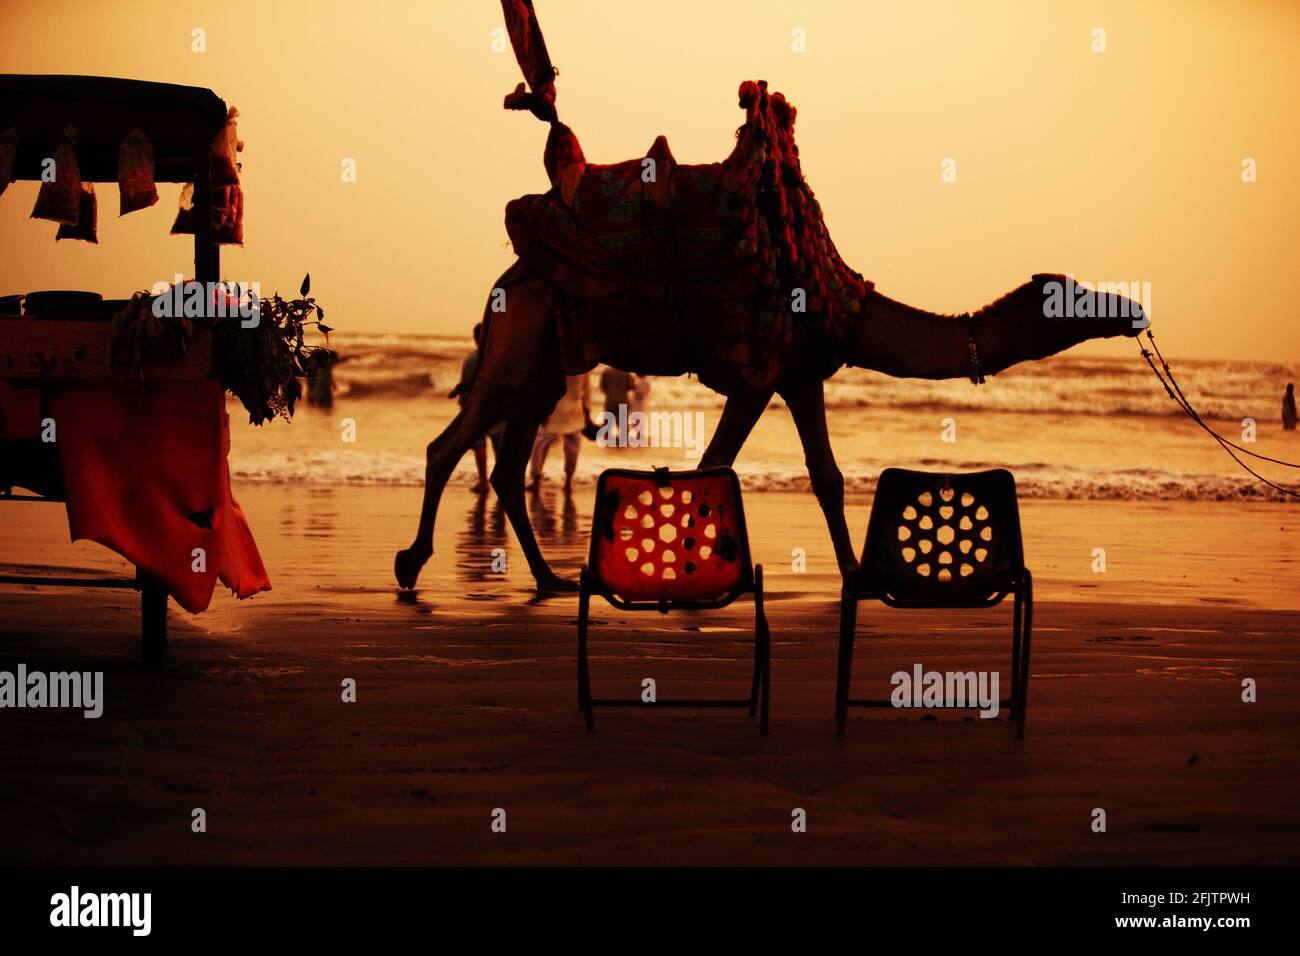 Karachi, Pakistan : propriétaire de chameaux marchant avec un chameau pour attirer la foule sur la plage de Clifton Beach à Karachi, Pakistan. Clifton Beach a.k.a Seaview est m Banque D'Images